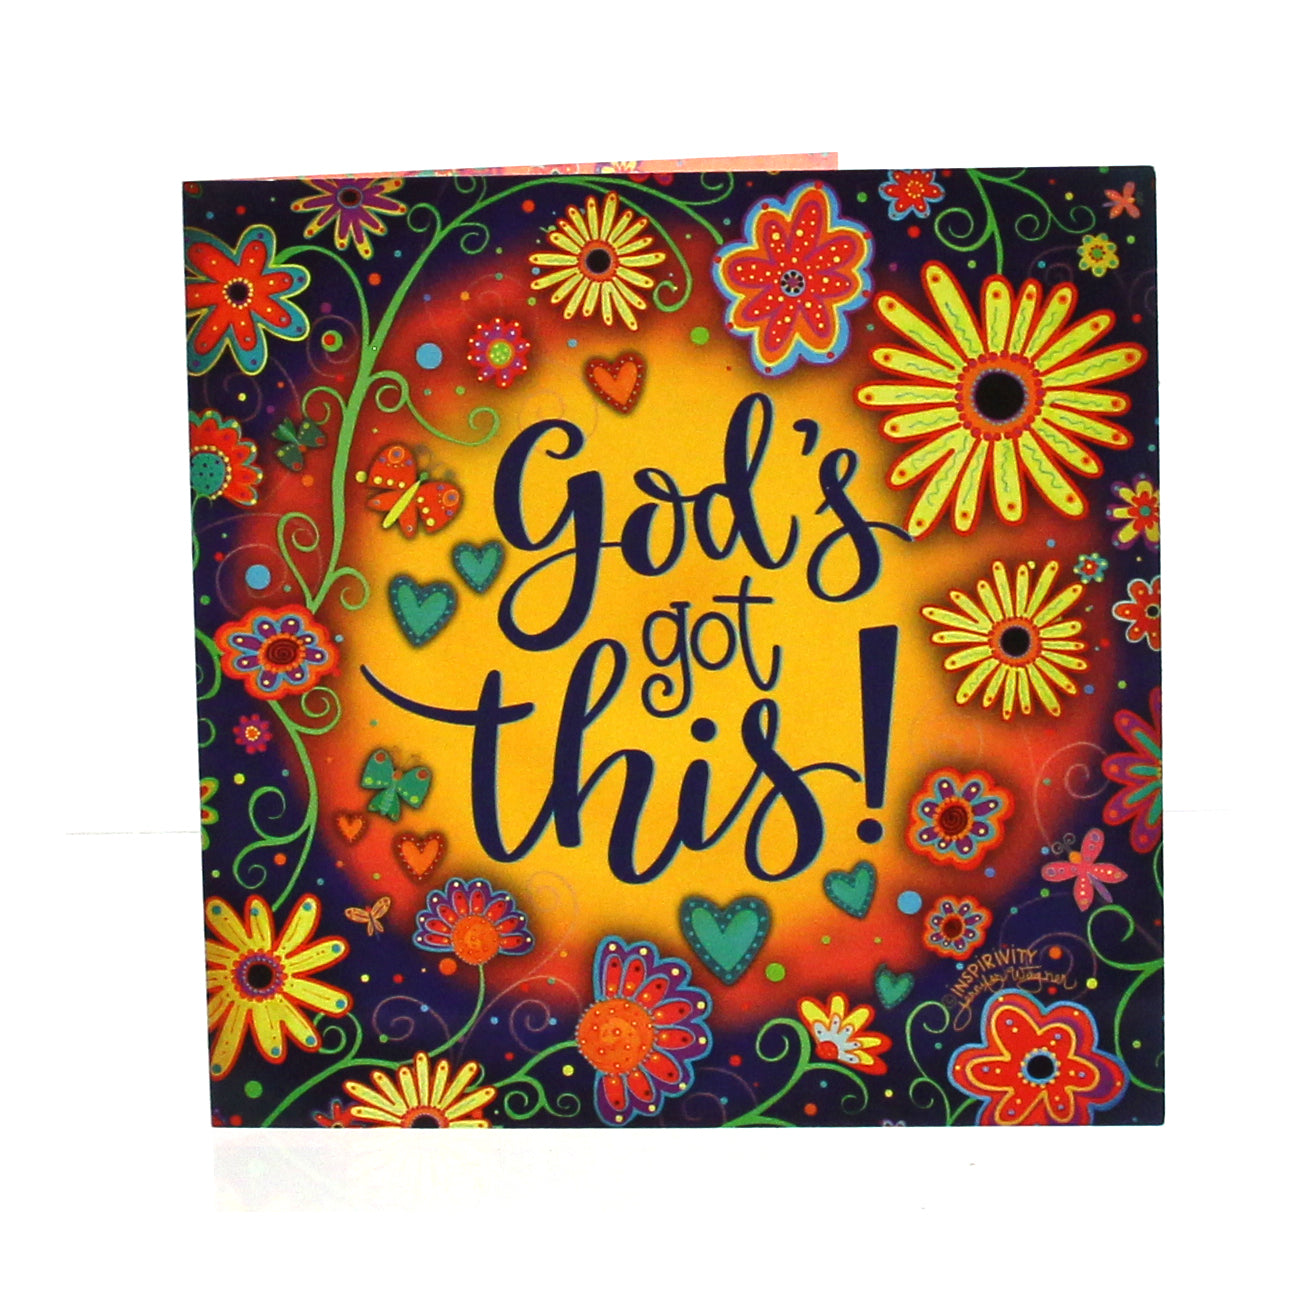 Encouragement Card Qubes: God's got this! w/Scripture